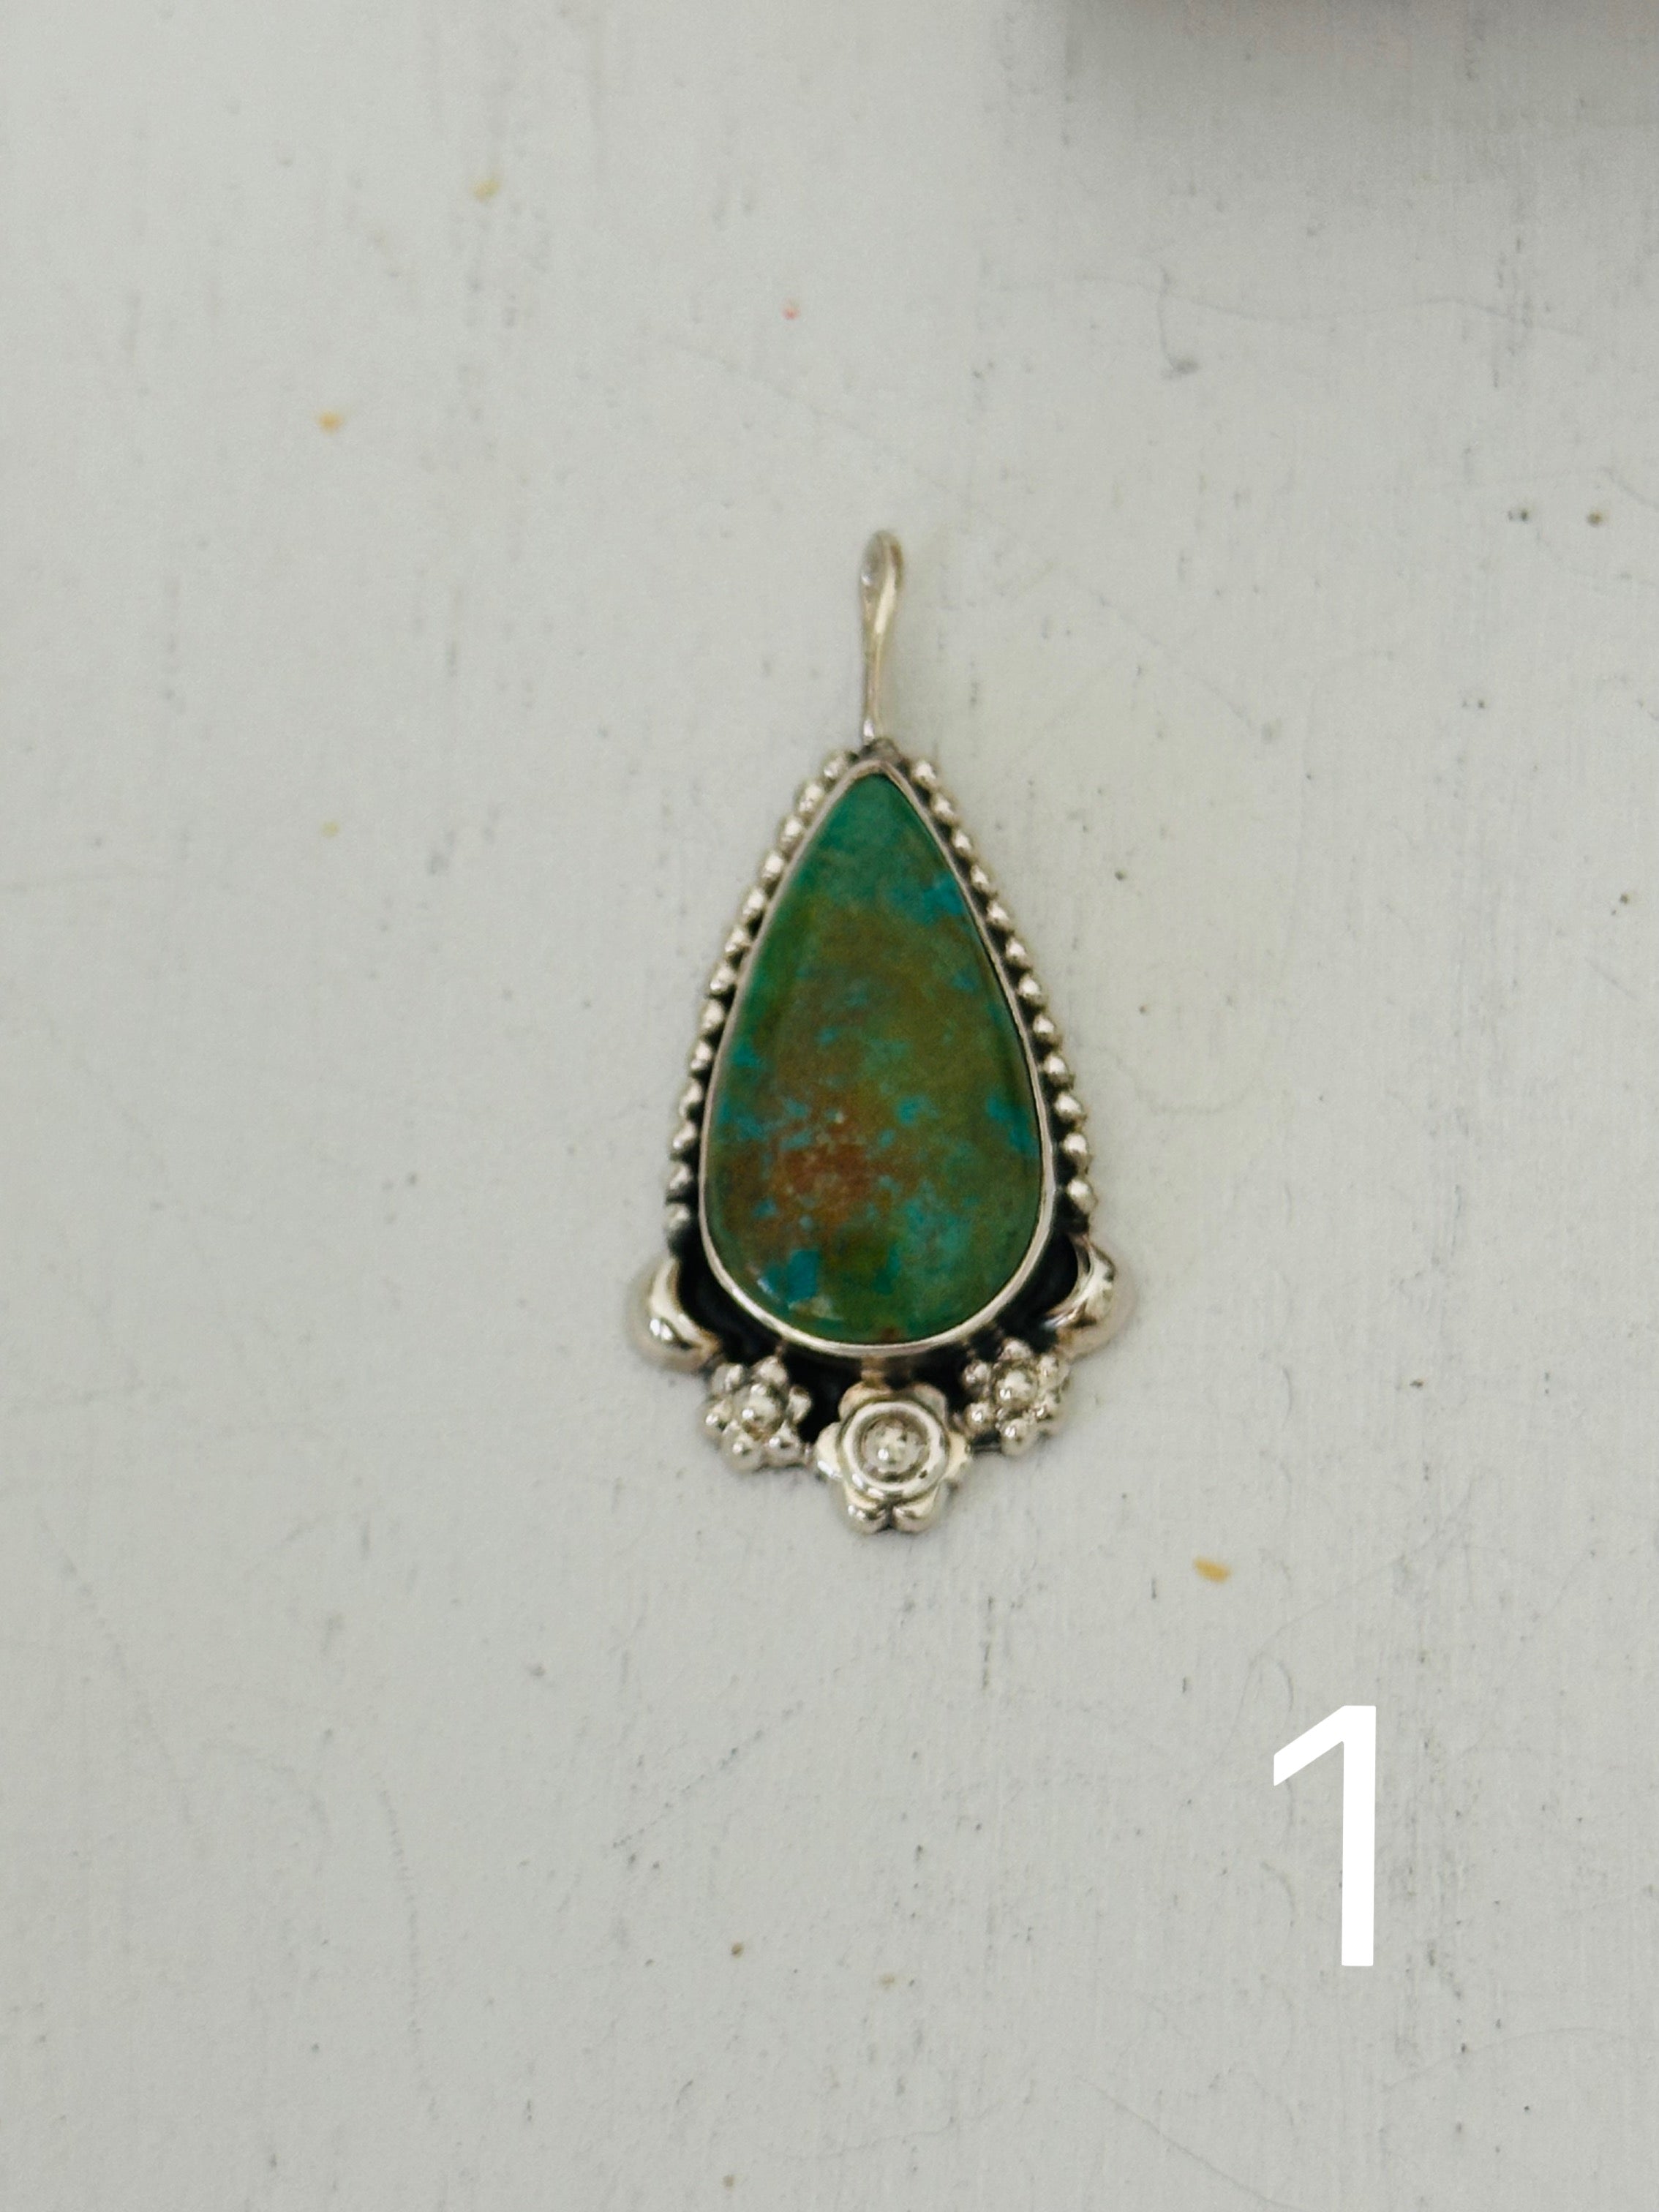 Southwest Handmade Kingman Turquoise & Sterling Silver Pendant